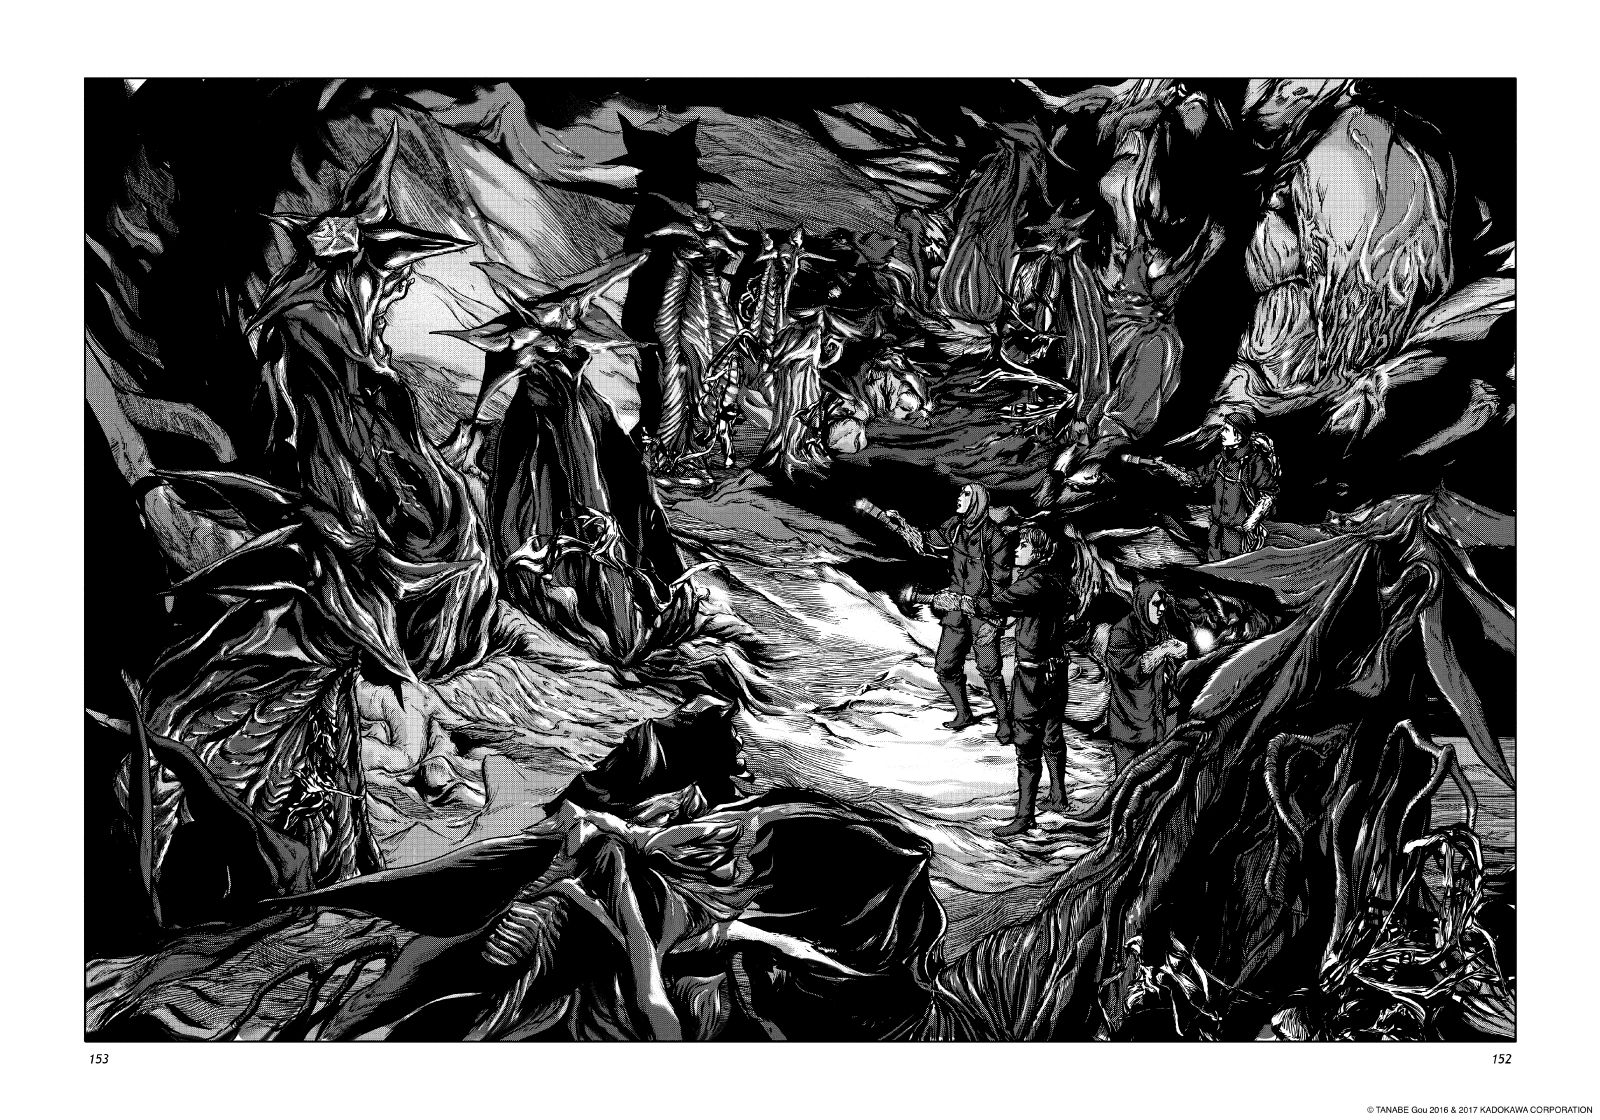 Les Chefs-d’œuvre de Lovecraft: Les Montagnes hallucinées